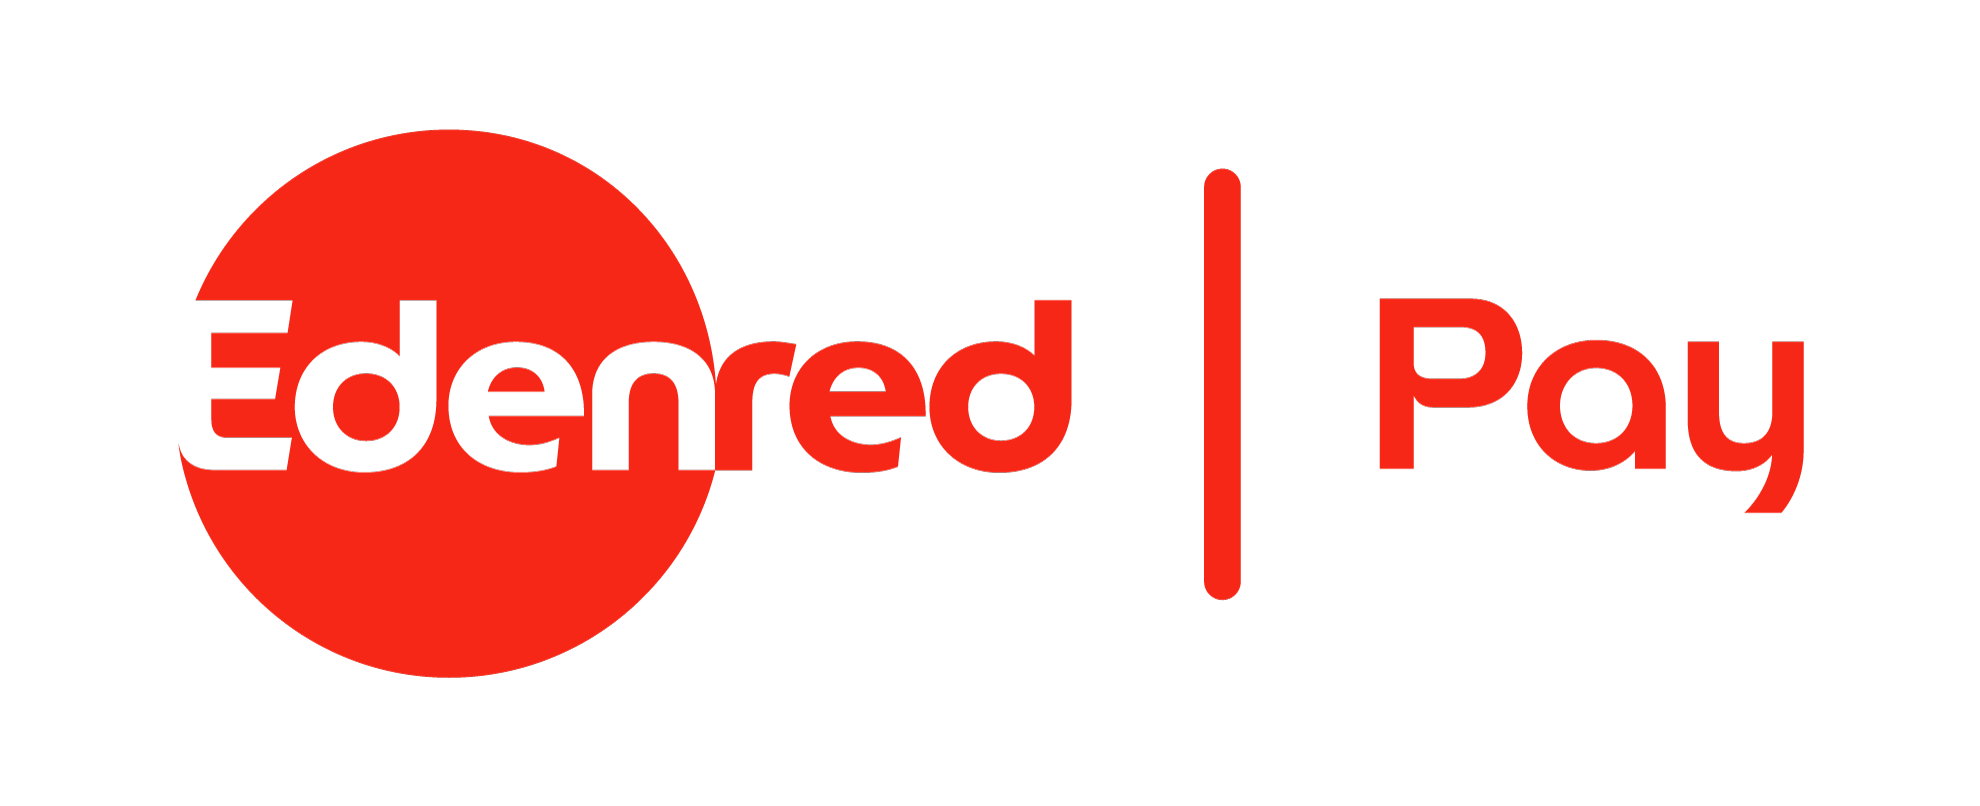 Corporate Spending Innovations | Edenred logo